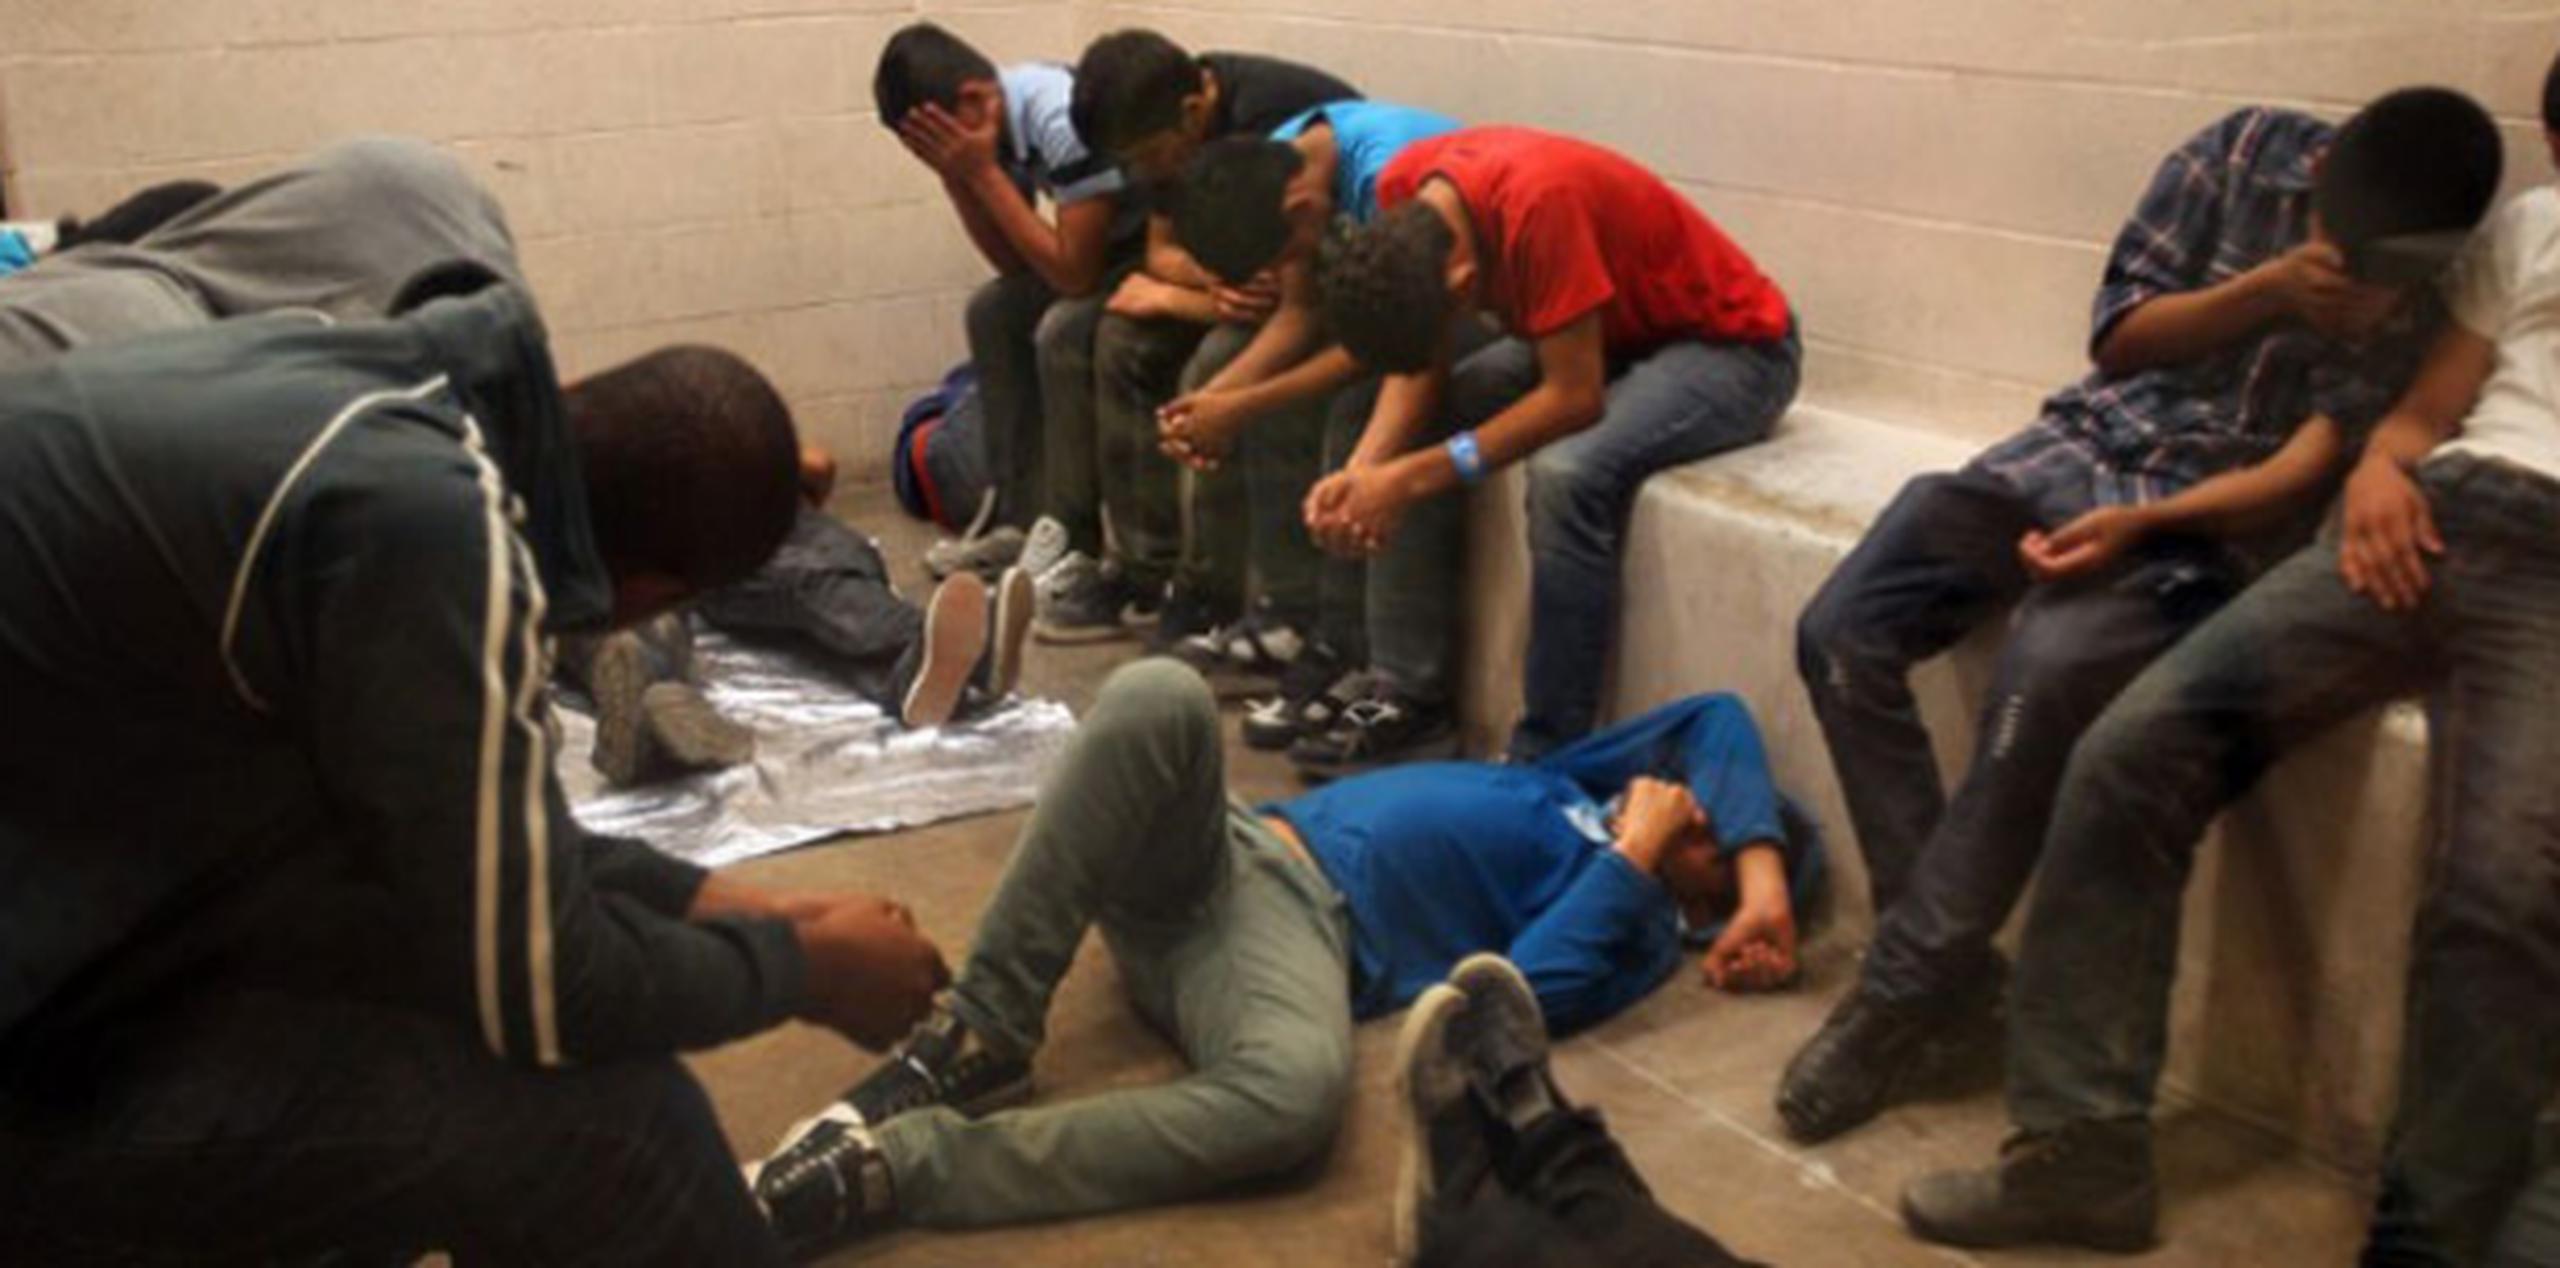 Grupo de inmigrantes detenidos mientras cruzaban la frontera con Estados Unidos, en McAllen Border Patrol Station en McAllen, Texas. (AP)